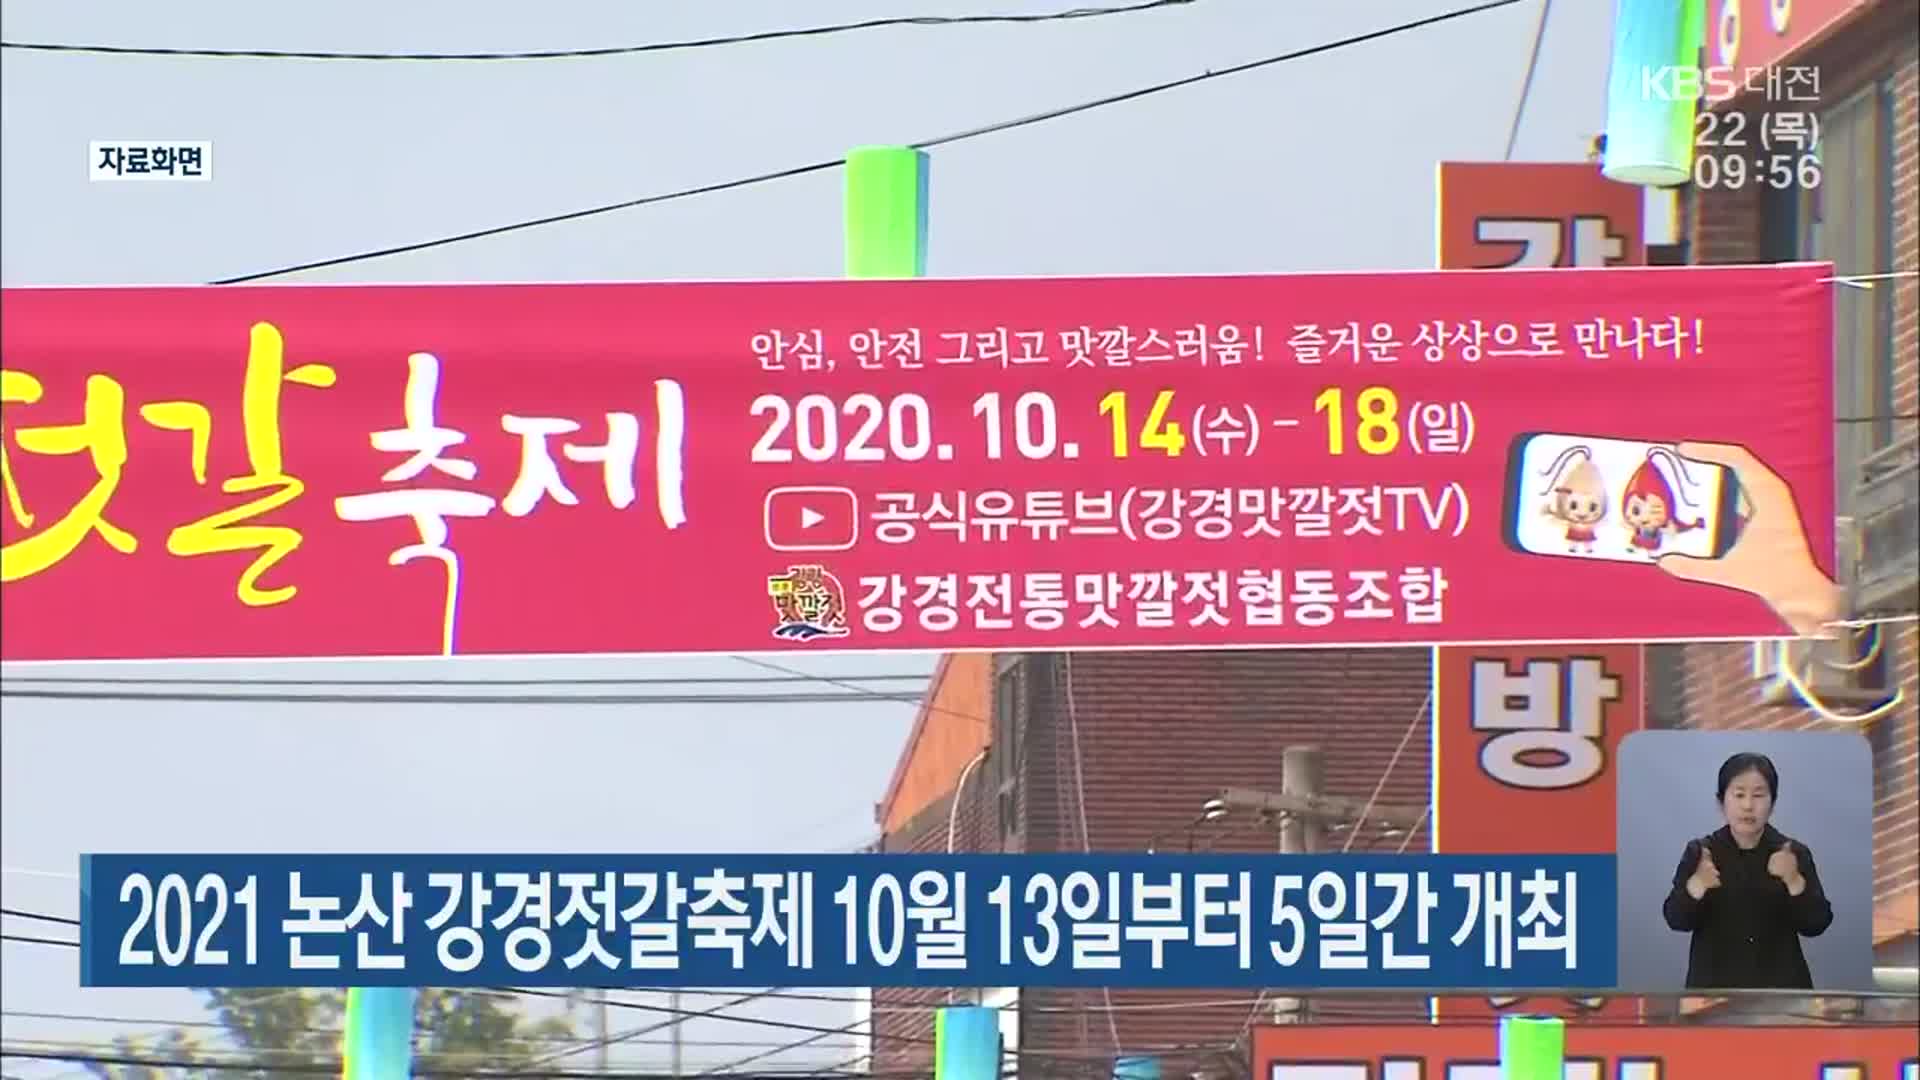 2021 논산 강경젓갈축제 10월 13일부터 5일간 개최